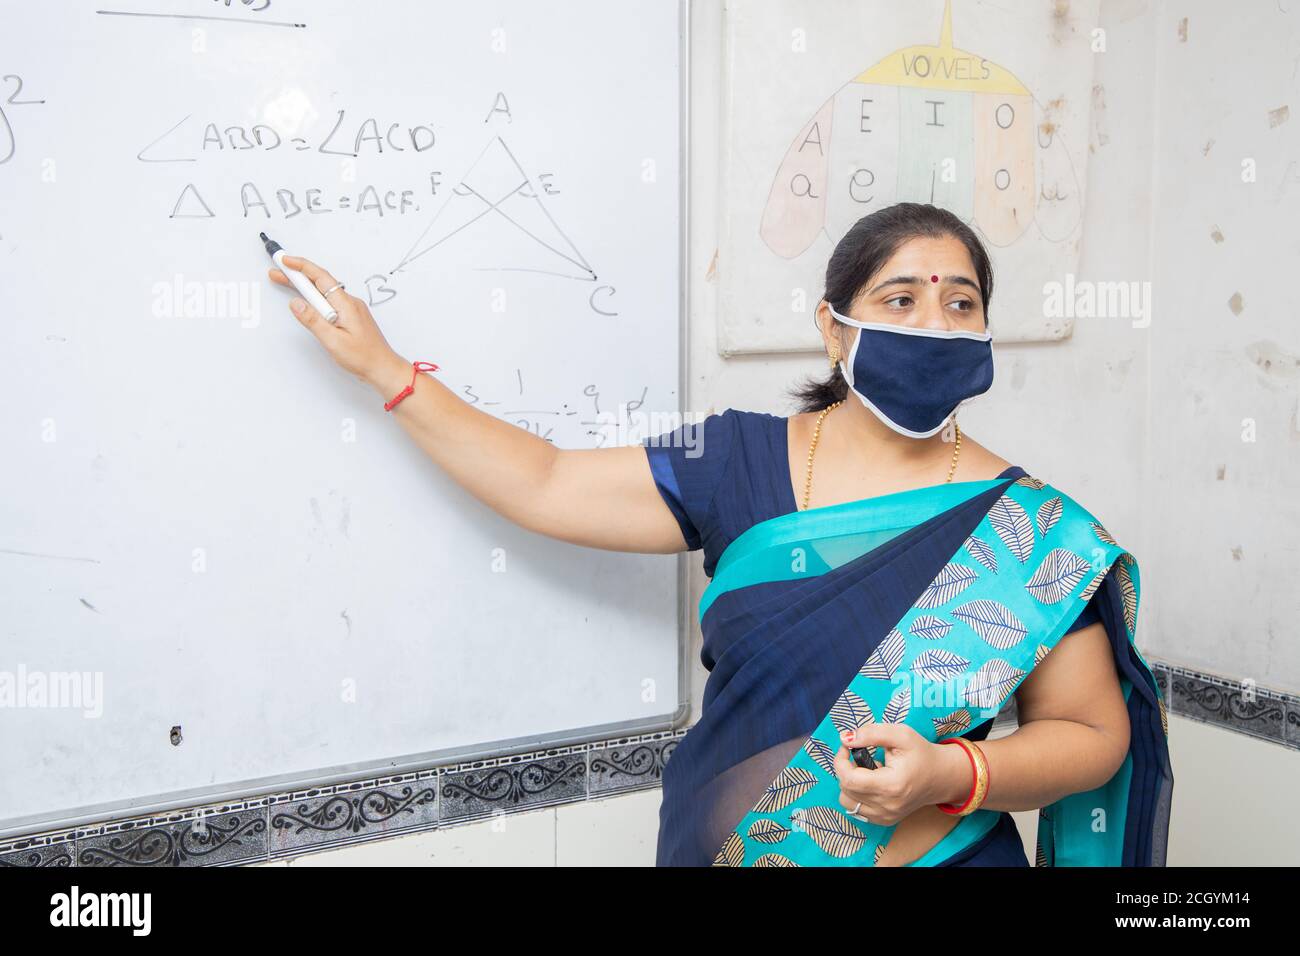 Weibliche Lehrerin Tragen Maske und lehren zeigen auf Whiteboard im Klassenzimmer, indische Schulklasse während covid19 Pandemie, neue Normalität Stockfoto